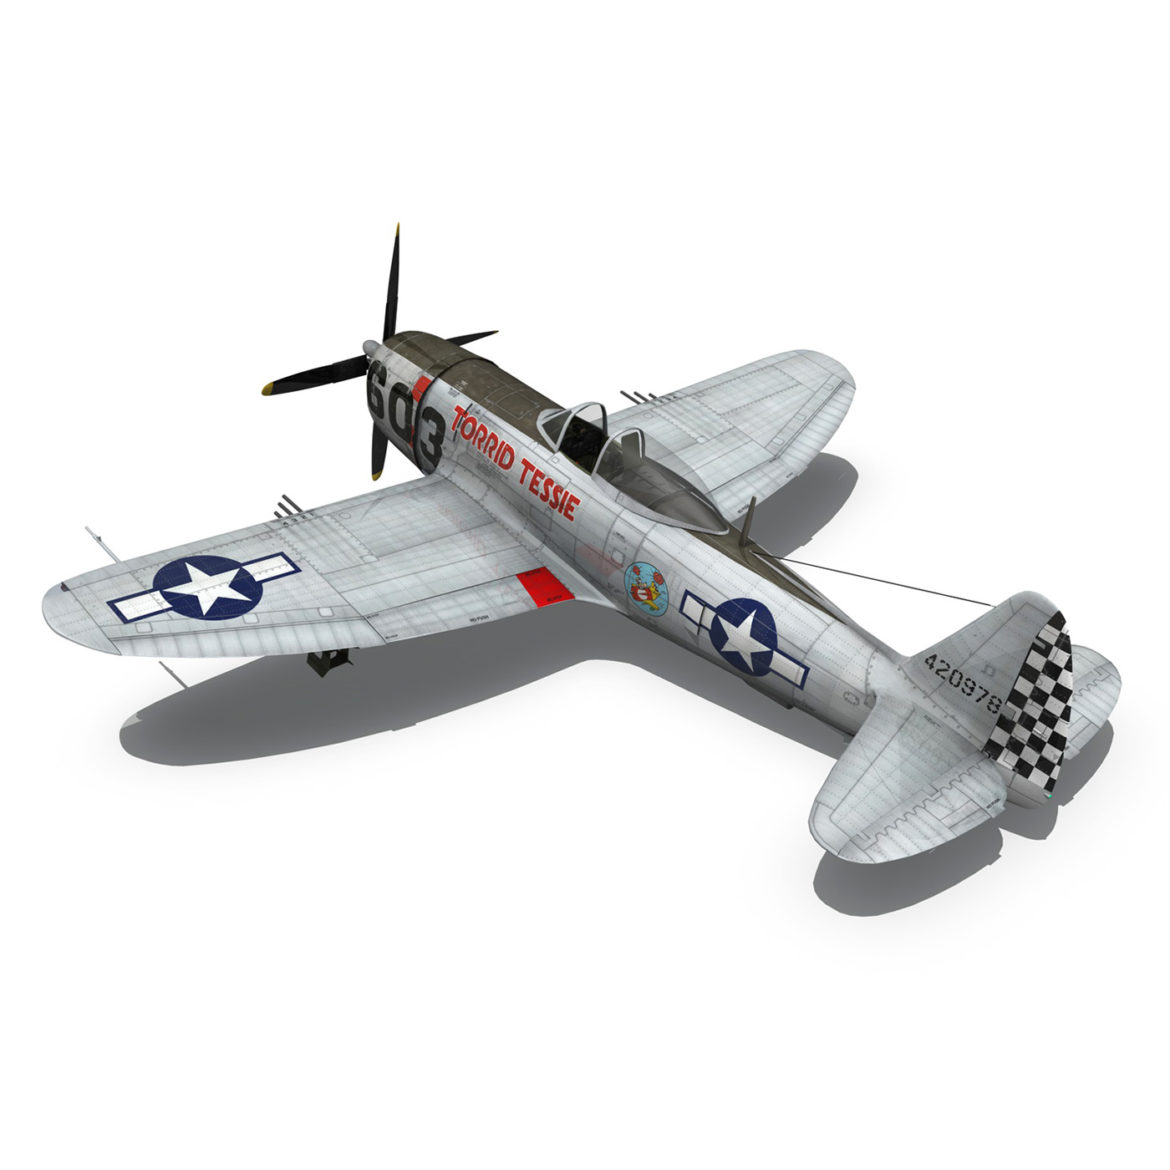 republic p-47d thunderbolt – torrid tessie 3d model 3ds c4d lwo lw lws obj fbx 303871